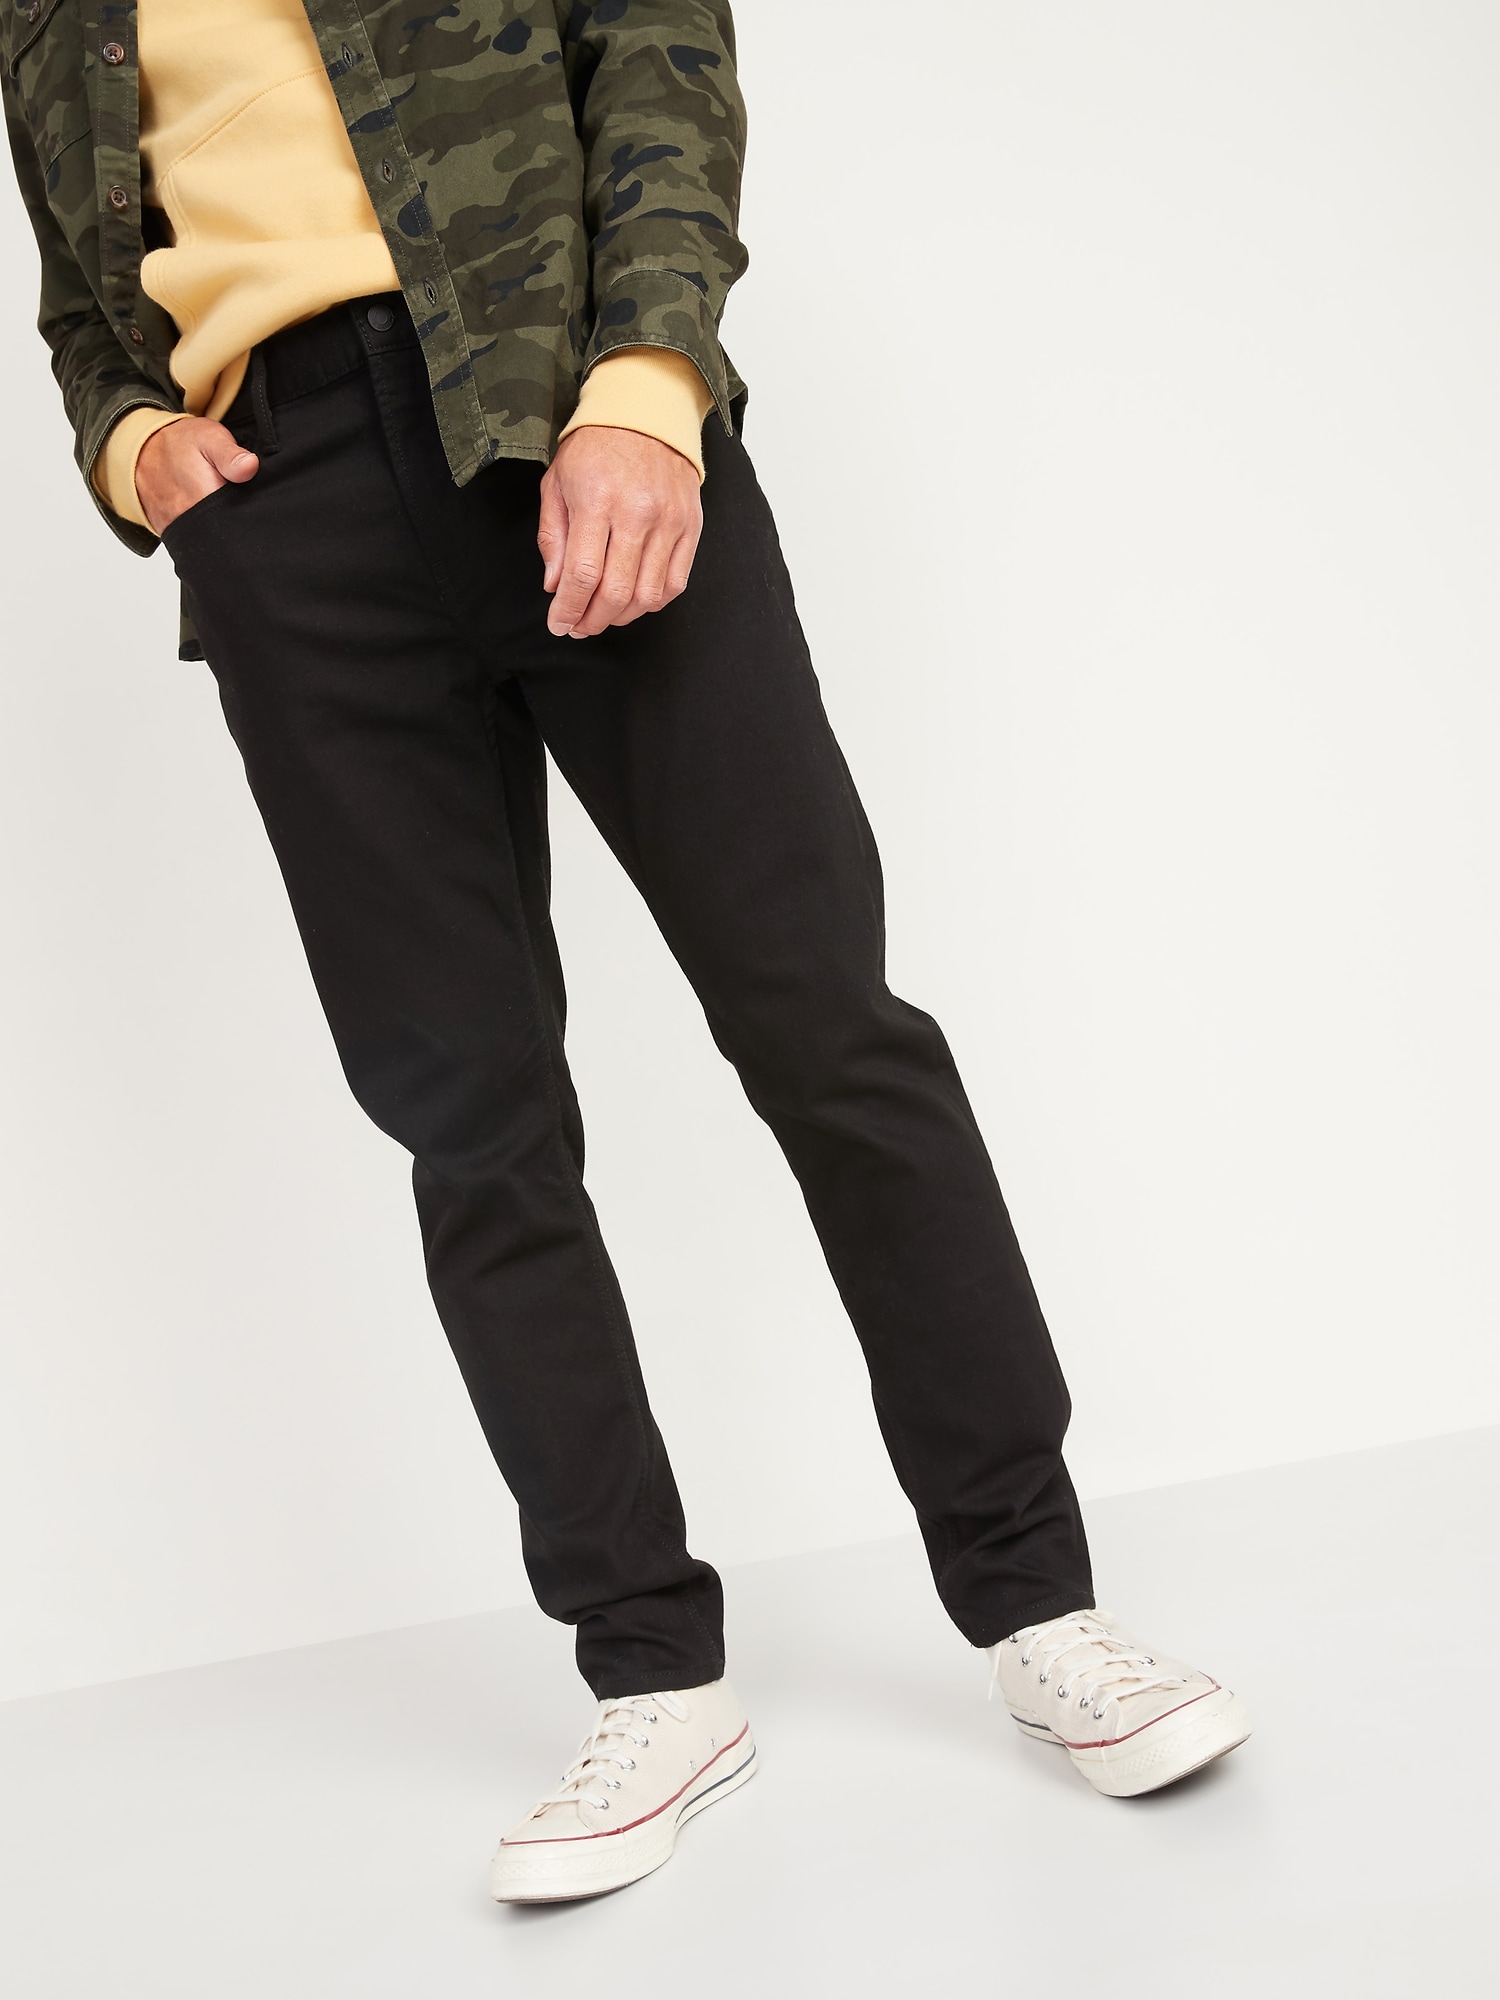 Relaxed Slim Taper Built-In Flex Never Fade Black Jeans for Men